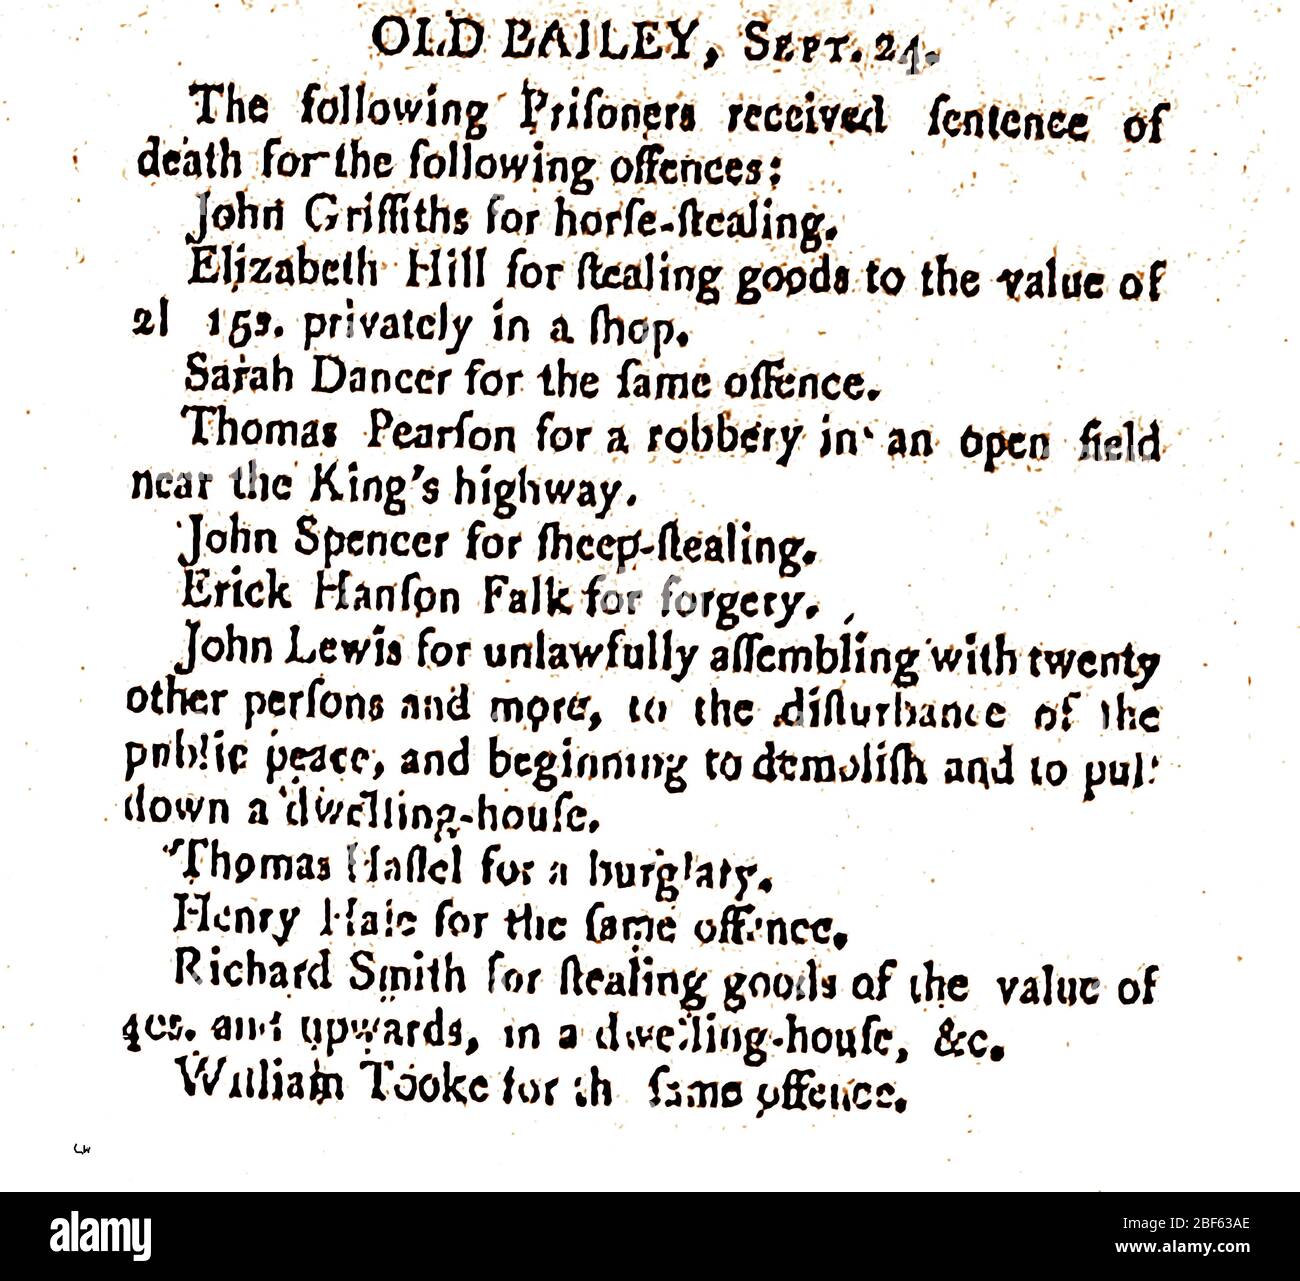 LAW & ORDER - eine englische Presse aus dem 18. Jahrhundert, die aus den 1790er Jahren stammt und die Todesstrafe für Diebstahlverbrechen im Old Bailey, London, berichtet Stockfoto